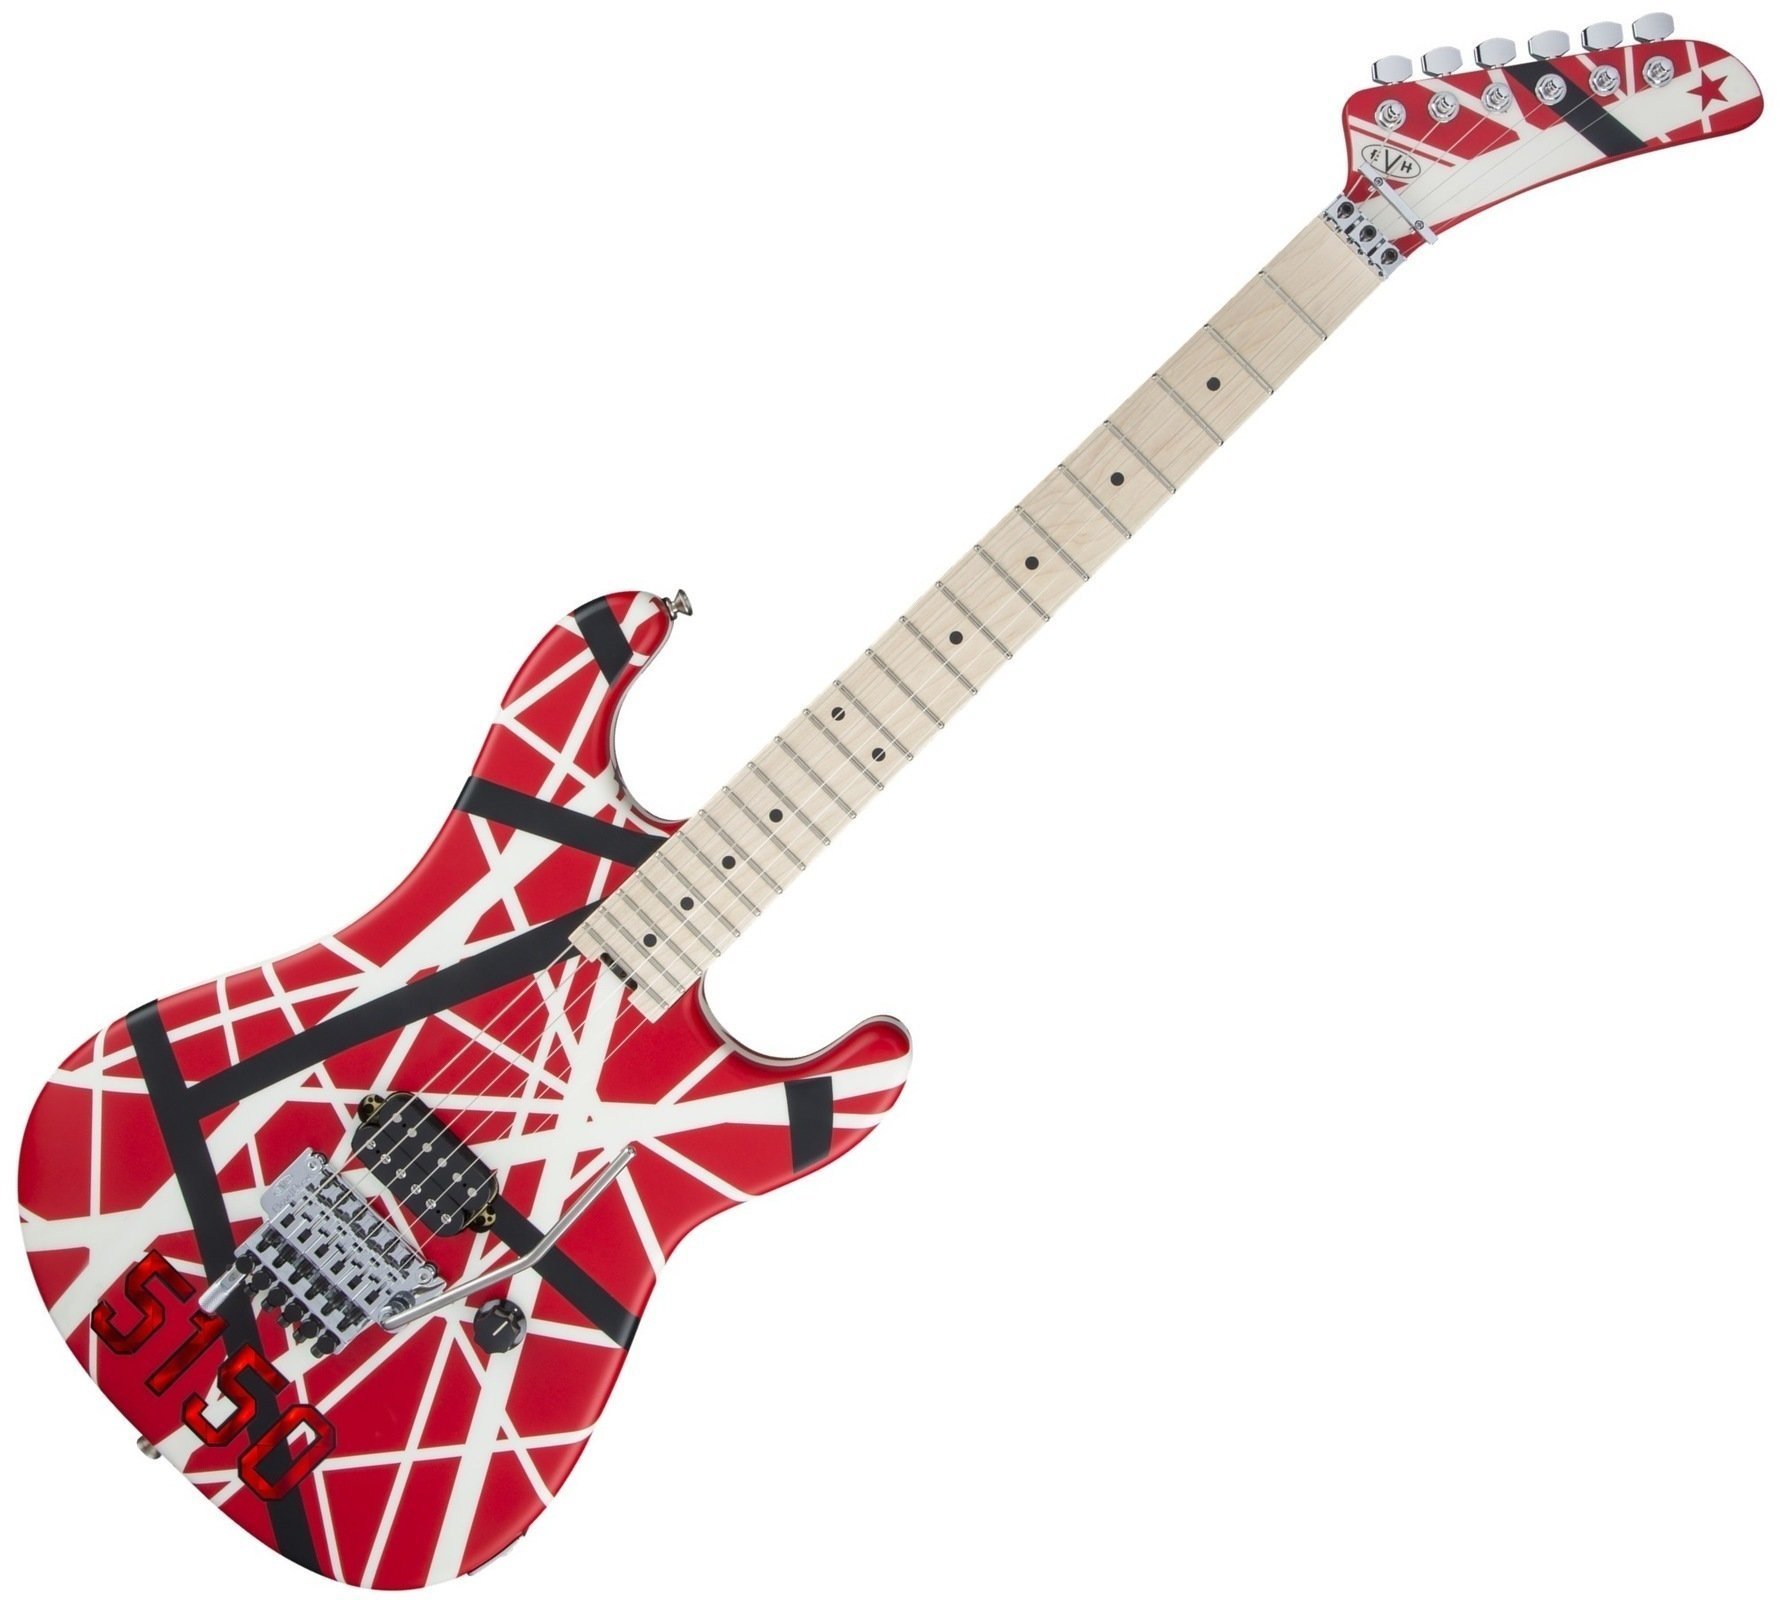 Gitara elektryczna EVH Striped Series 5150 MN Red Black and White Stripes